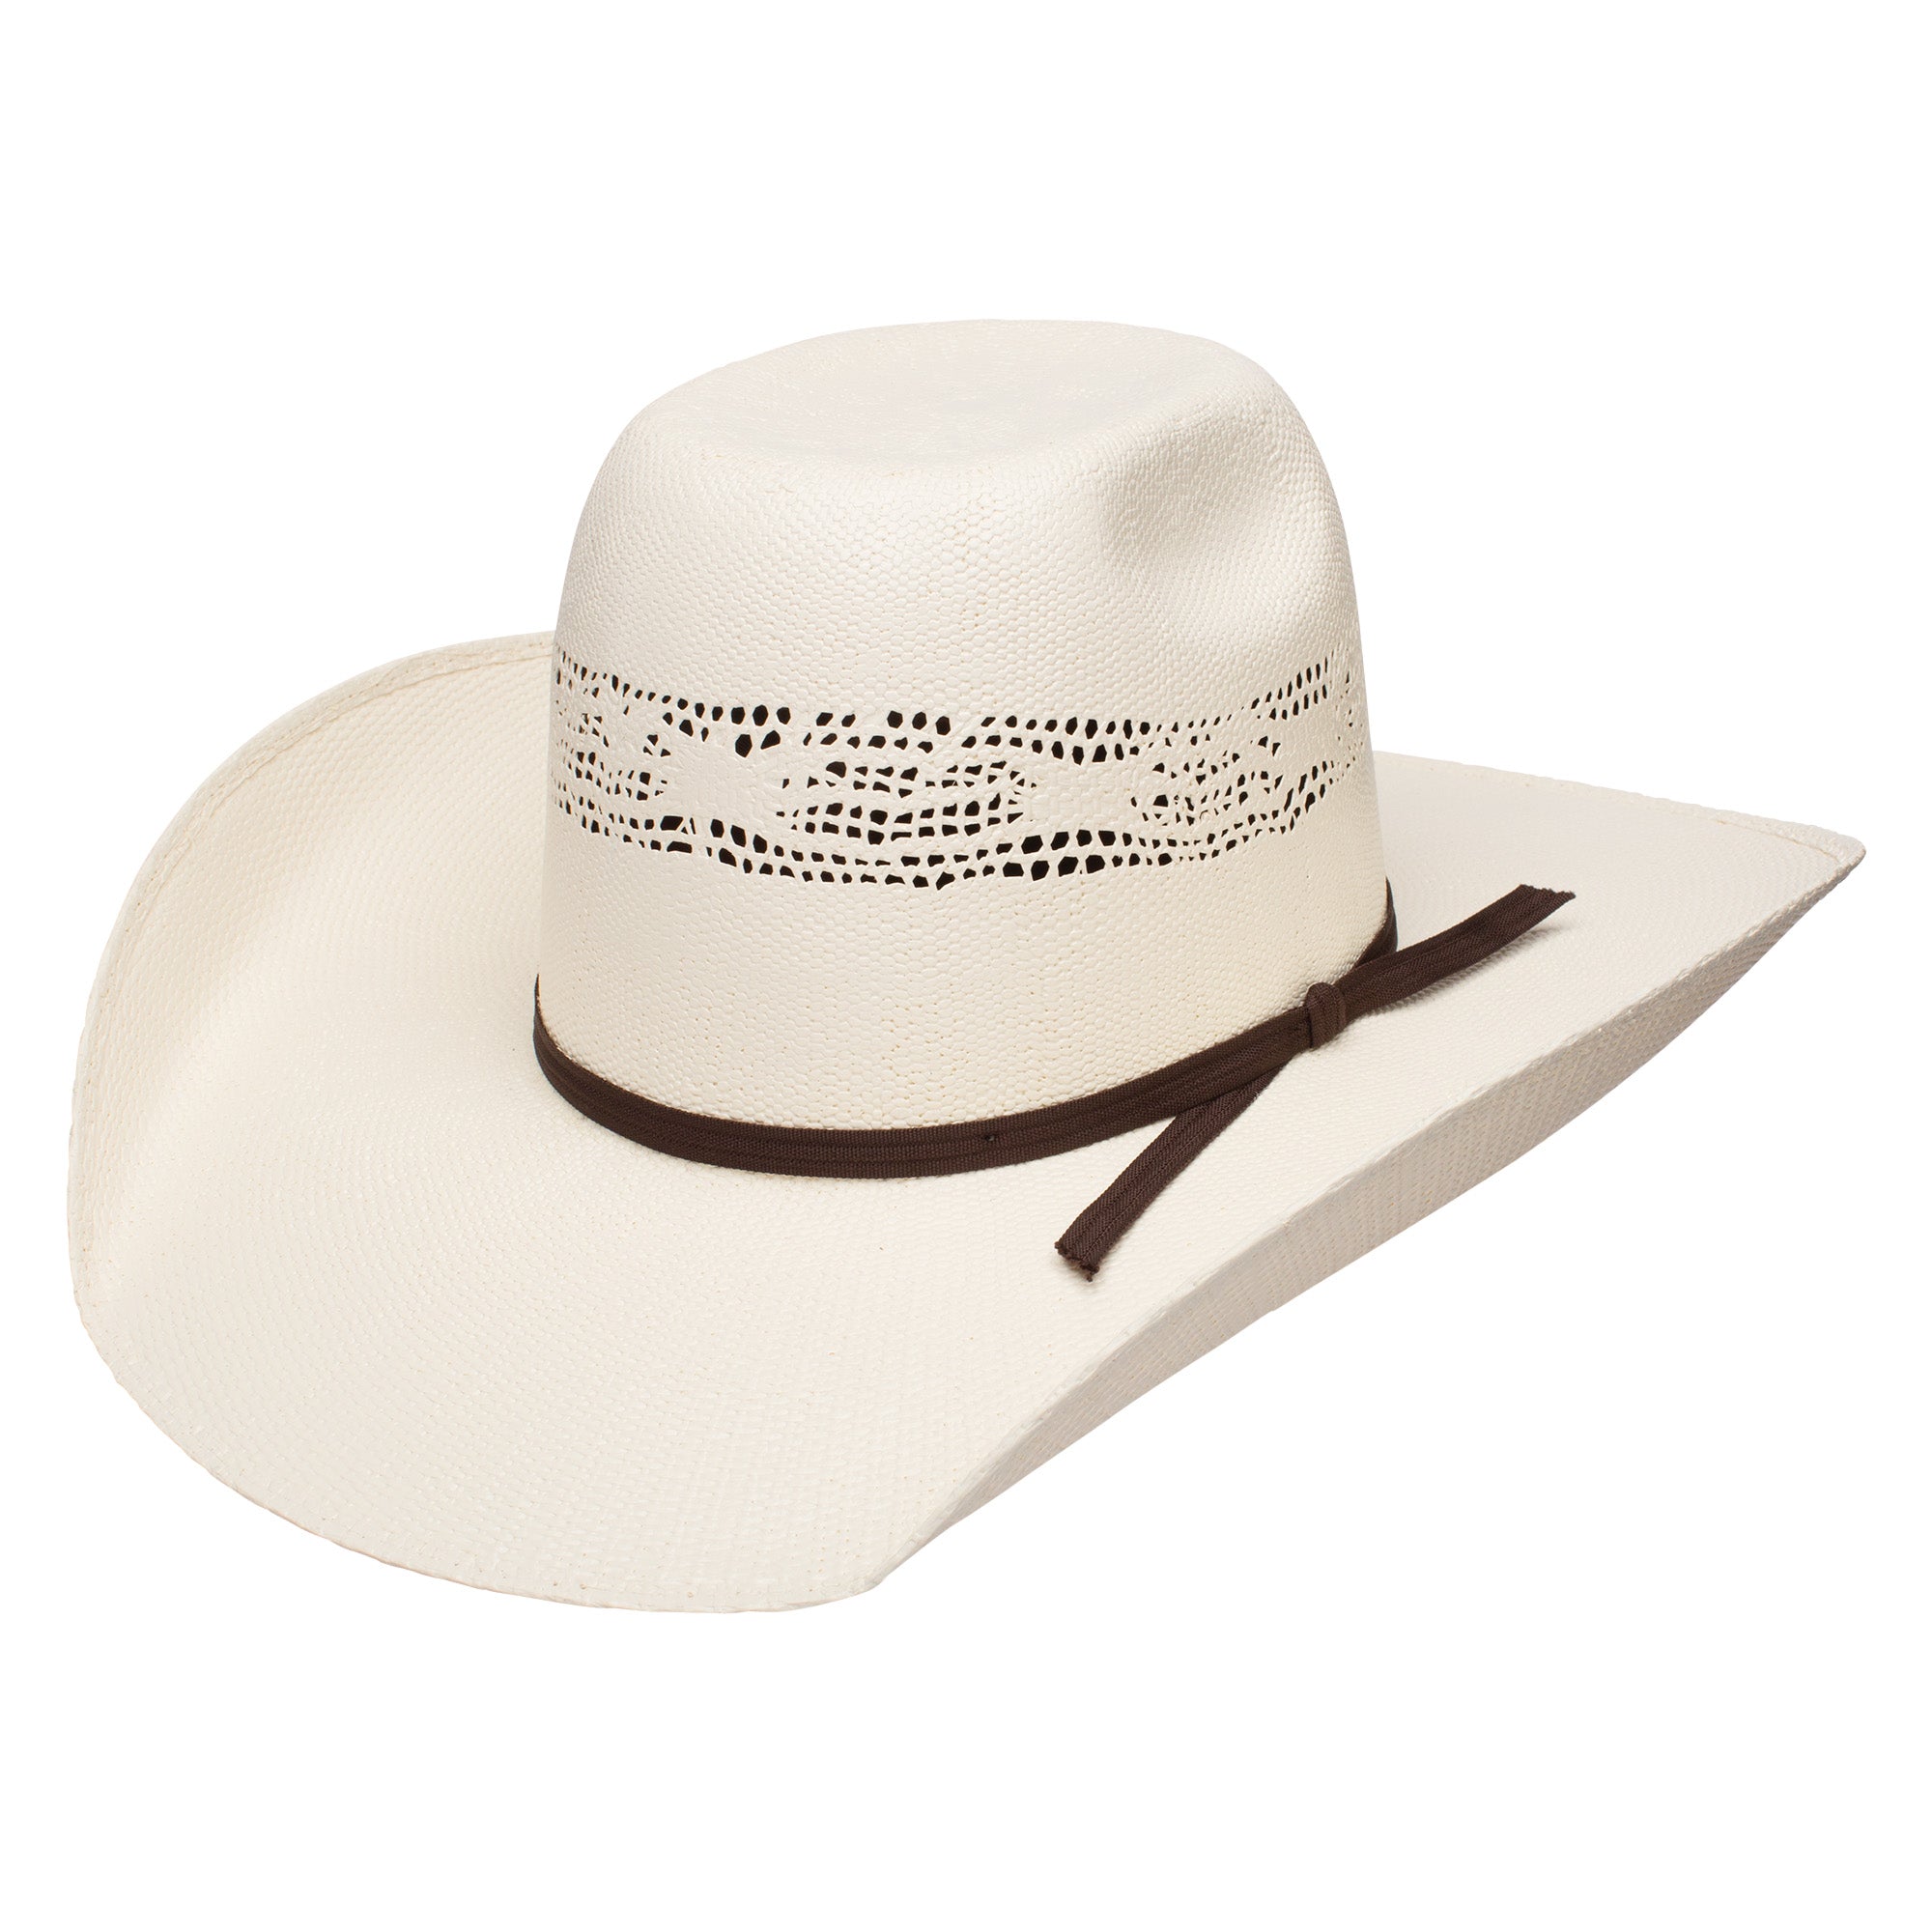 Super Duty- straw cowboy hat